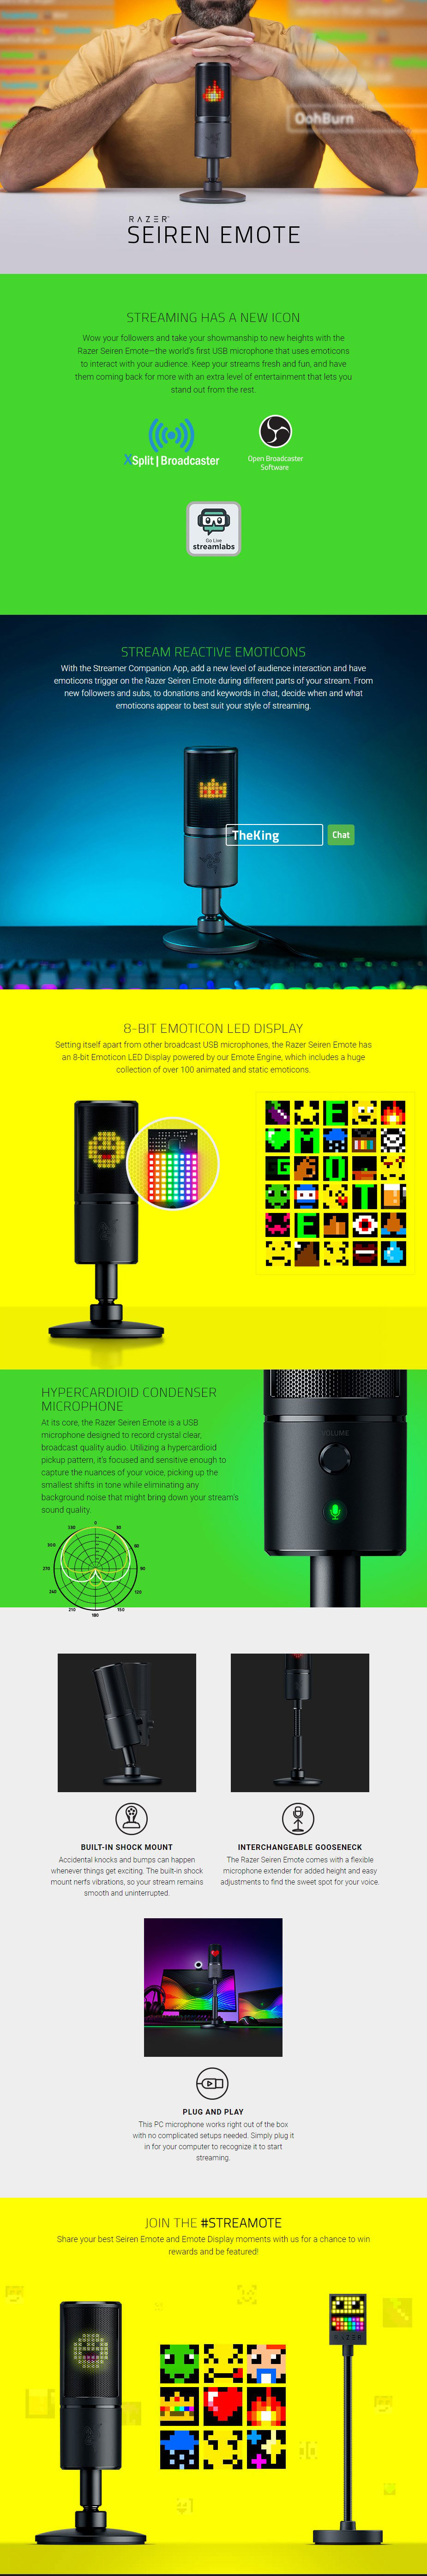 Razer Seiren Emote Microphone with Emoticons - Black RZ19-03060100-R3M1 Details